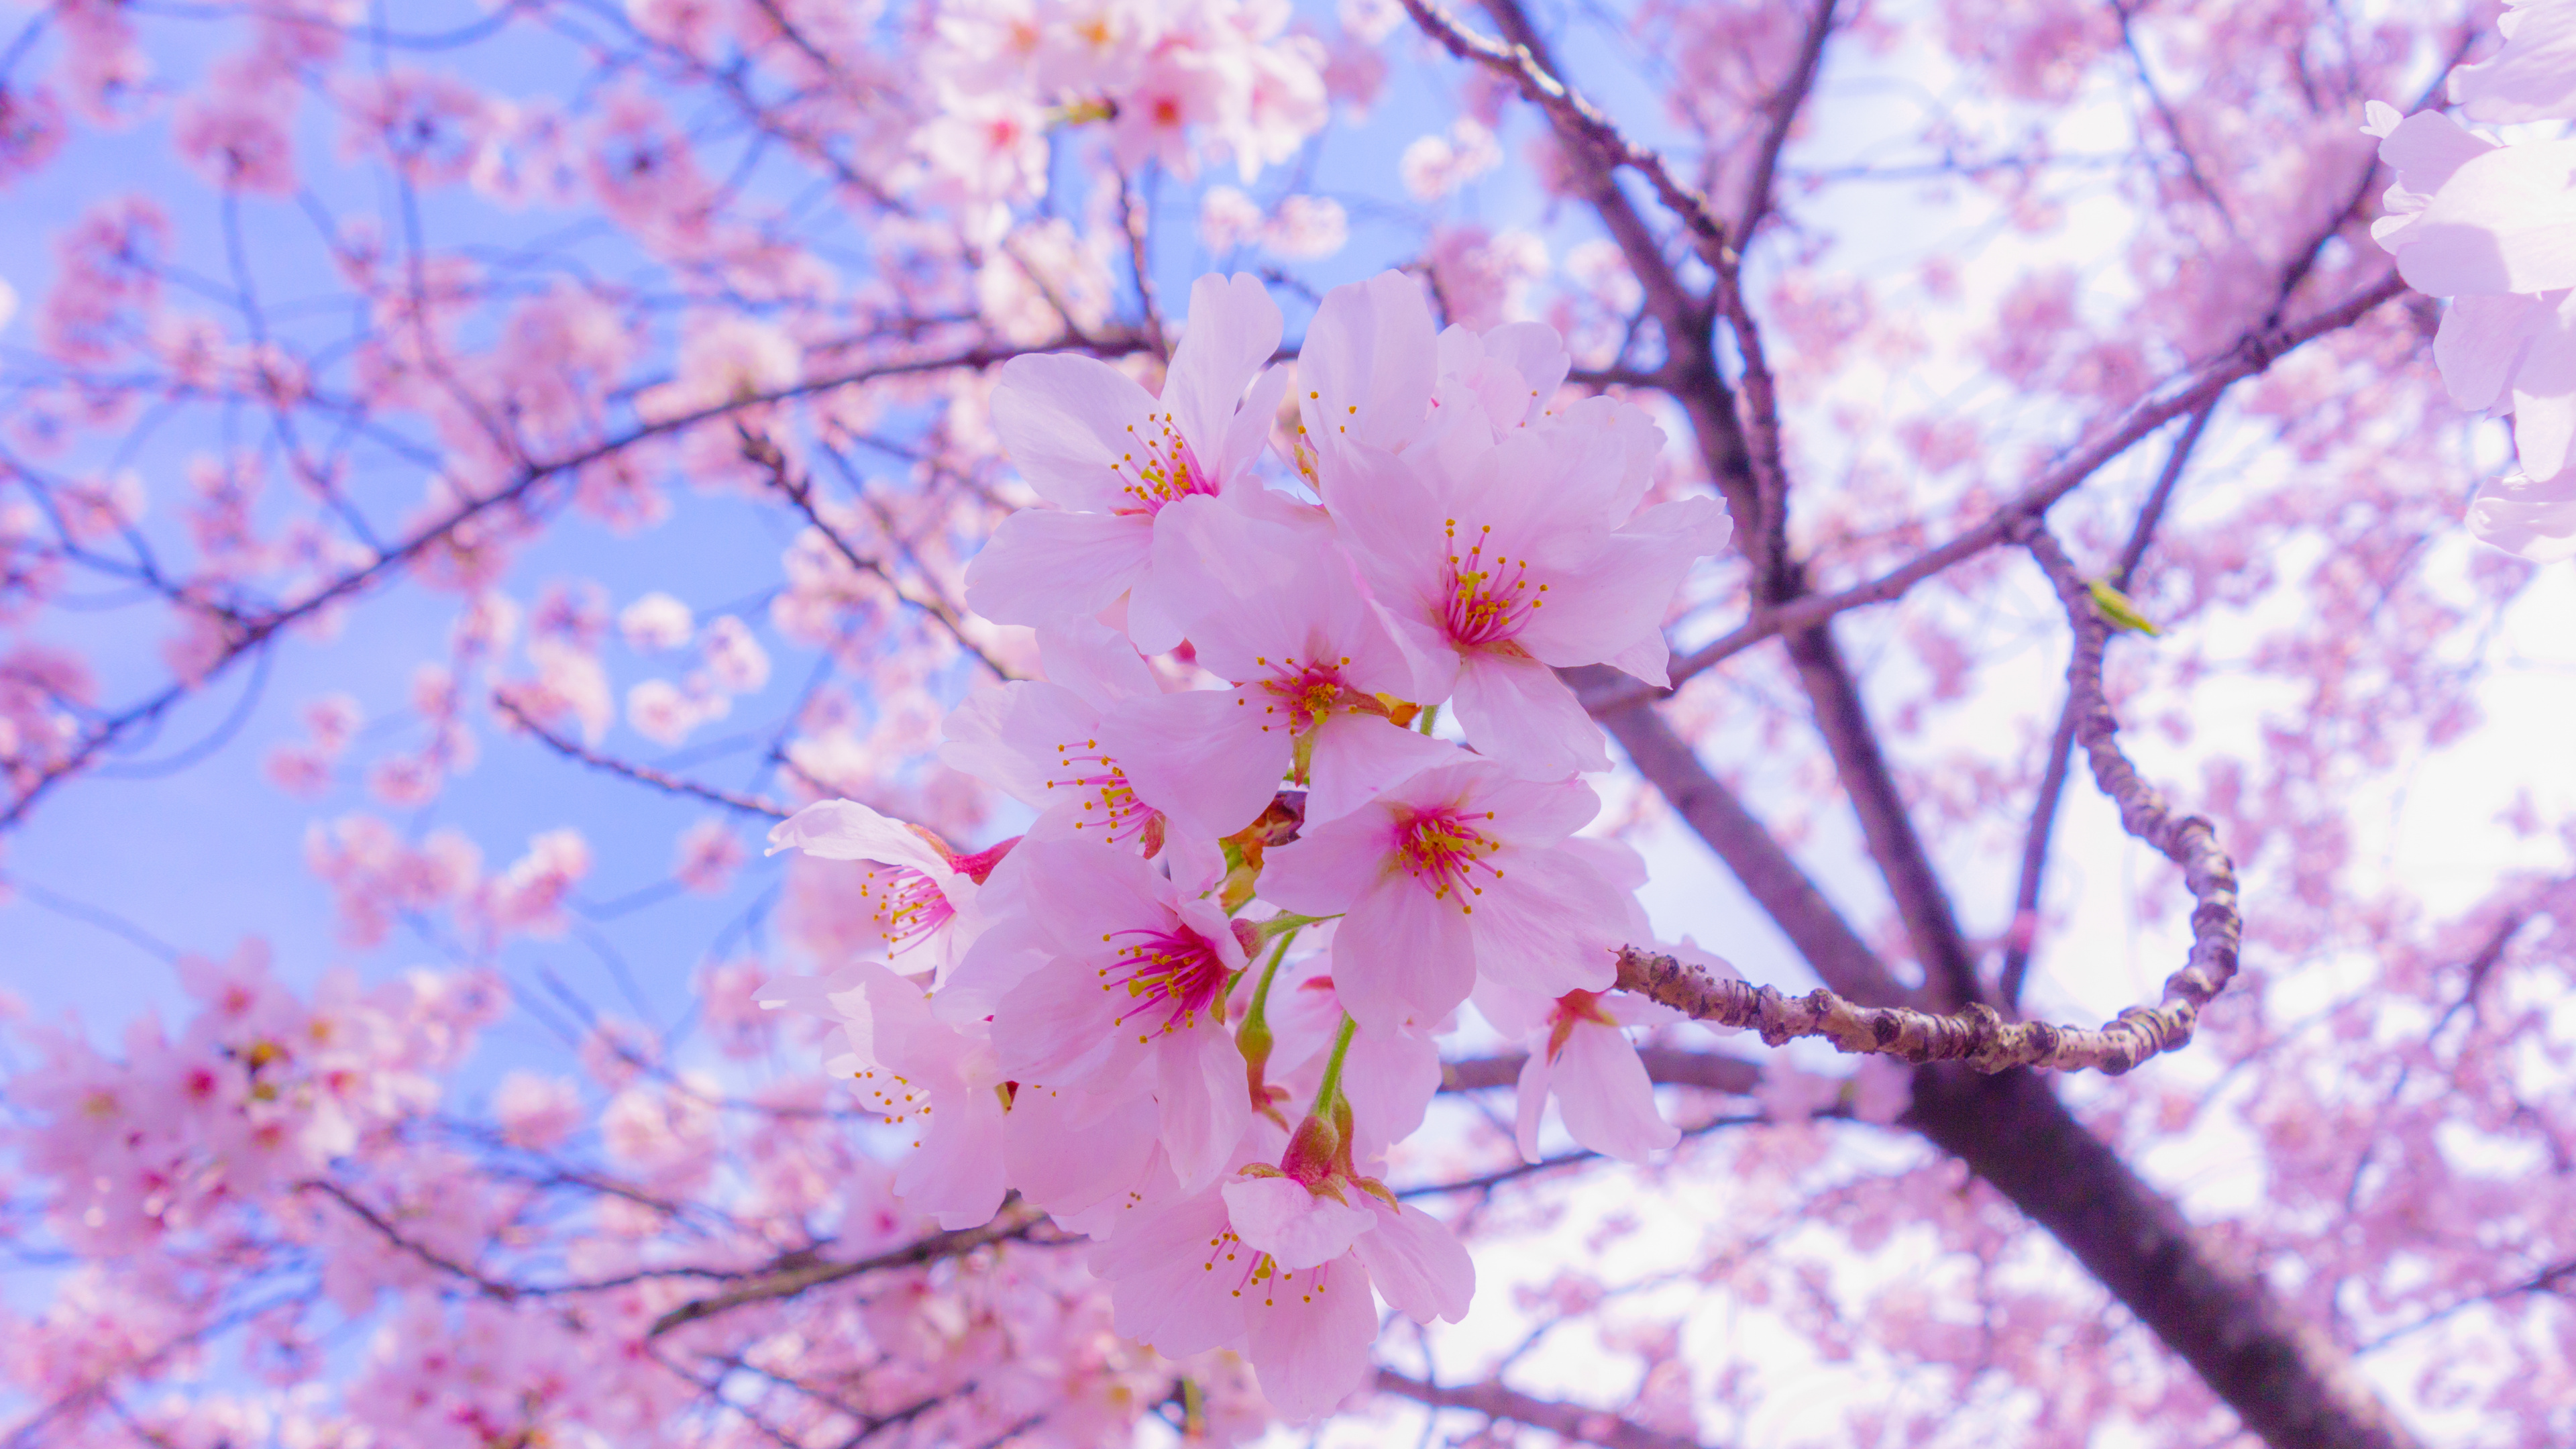 樱花, 开花, 粉红色, 弹簧, 树枝 壁纸 3840x2160 允许